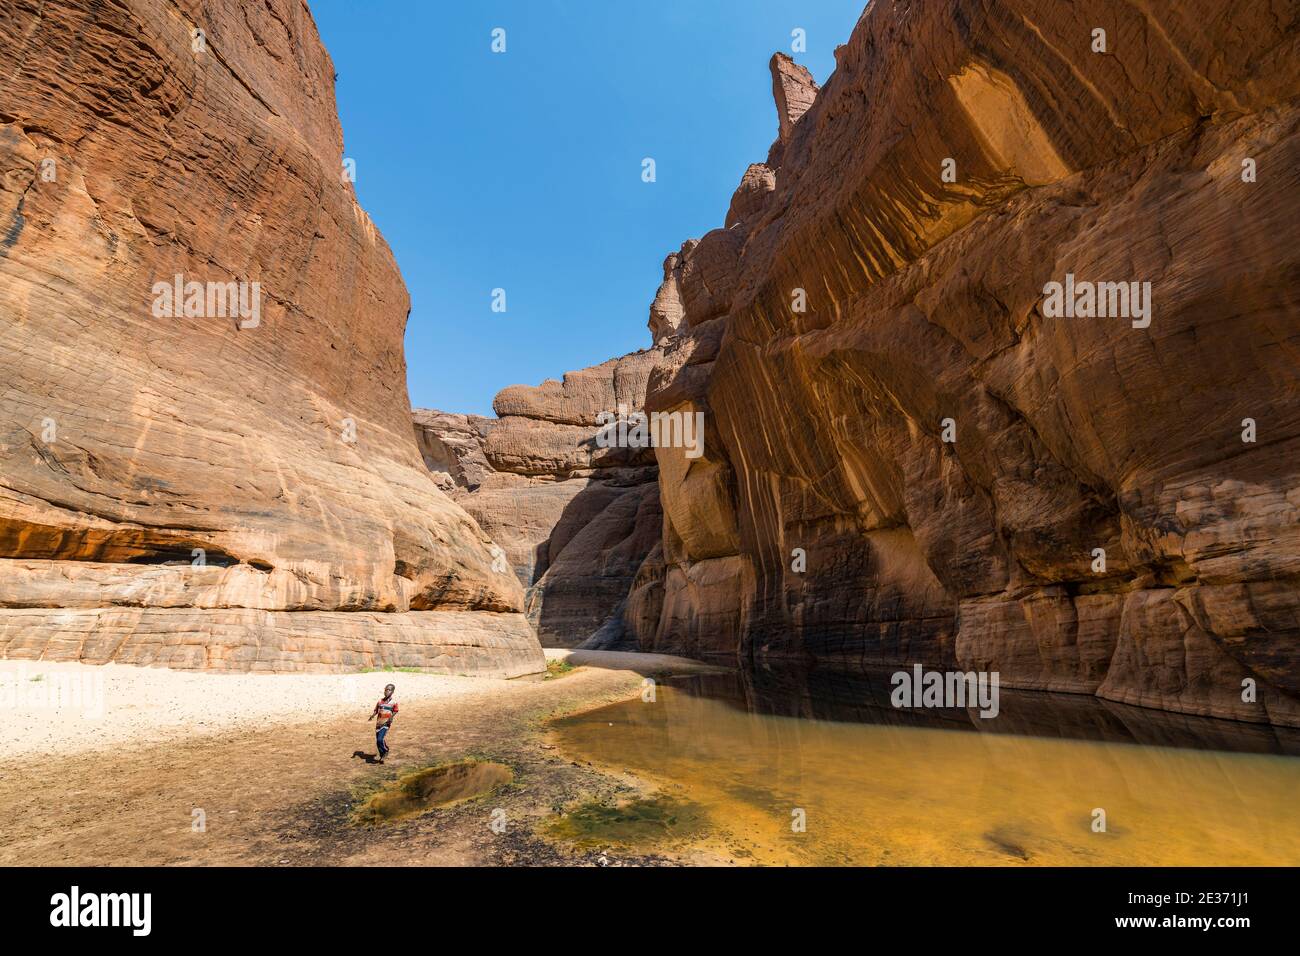 Ragazzo al buco d'acqua Guelta d'Archei, gola di roccia, altopiano Ennedi, Ciad Foto Stock